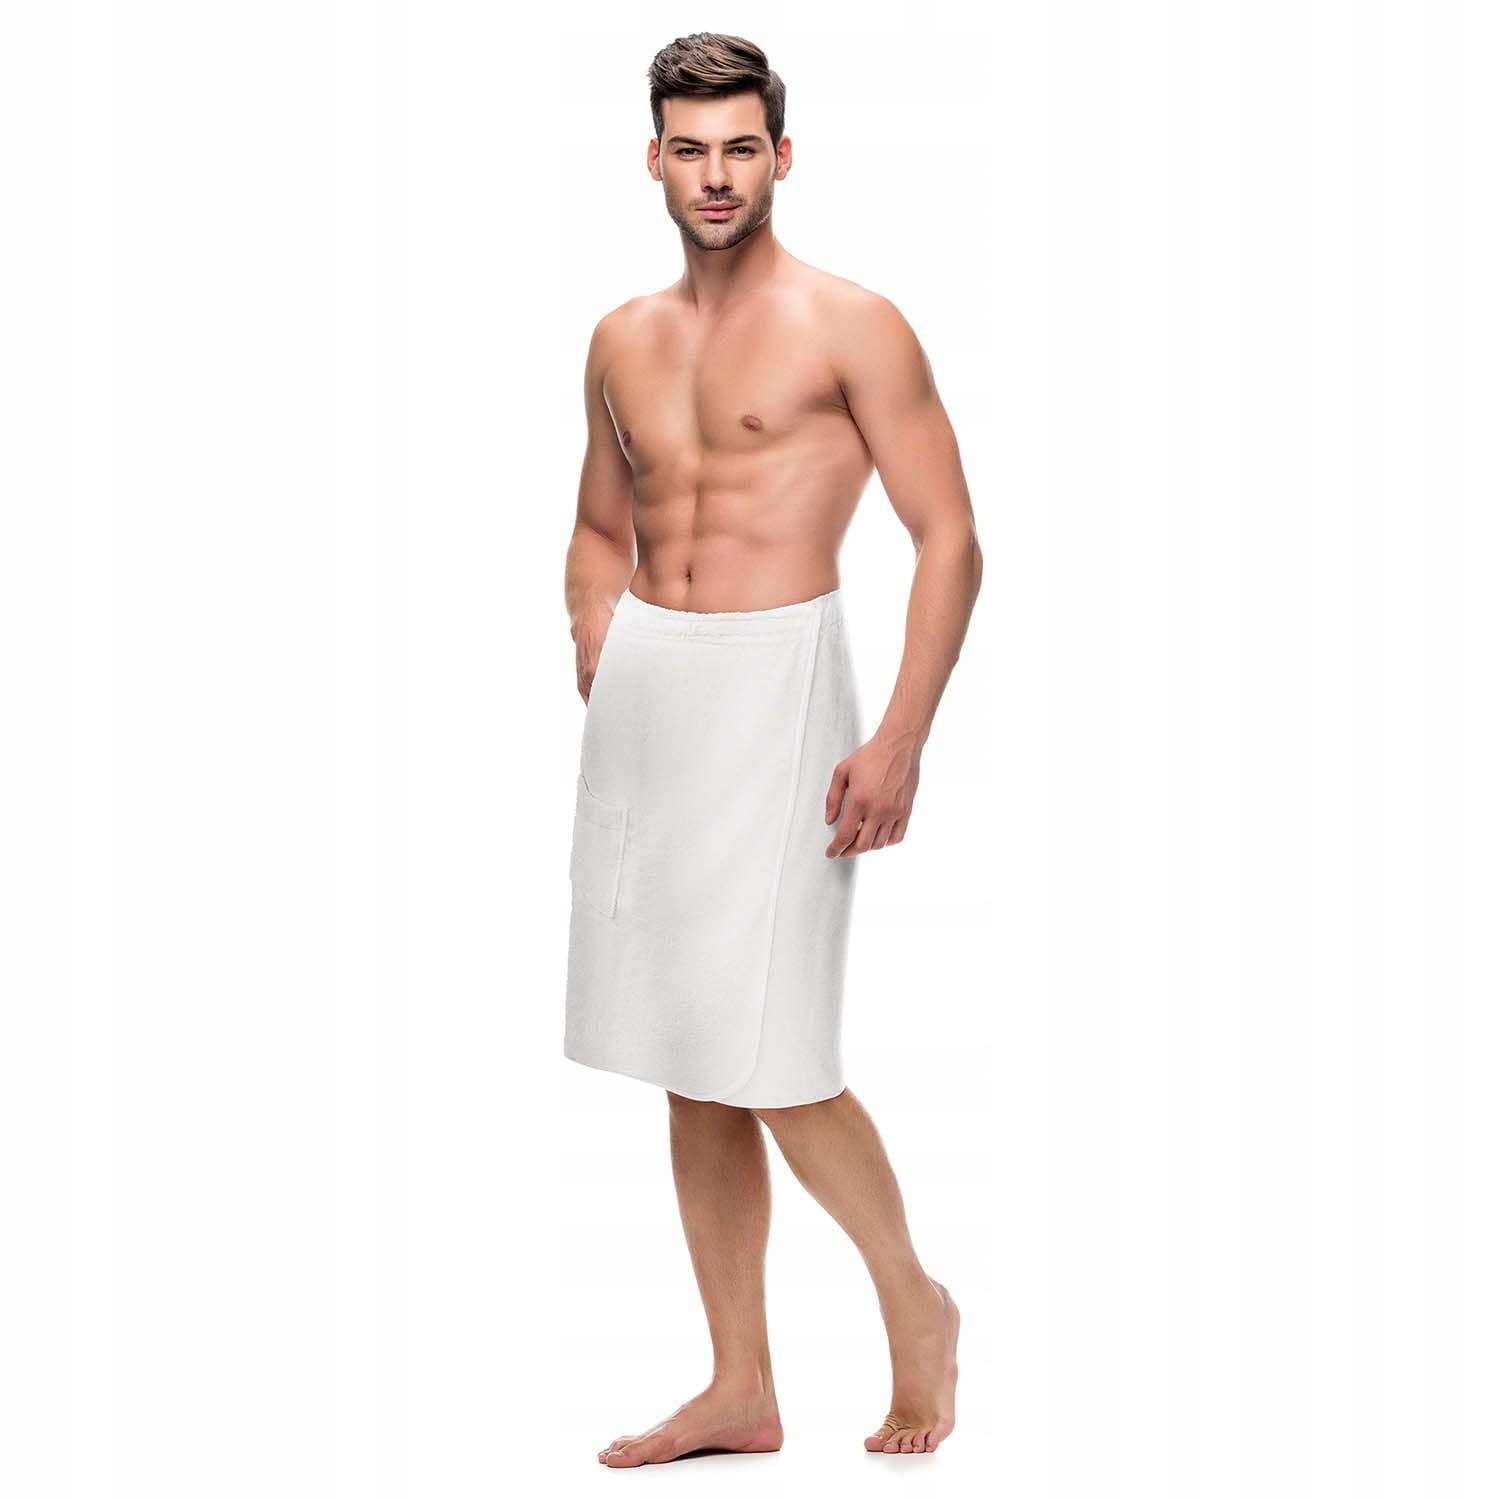 Kilt Ręcznik Kąpielowy Męski Do Sauny S/M Bawełna Frotte SpaBiały